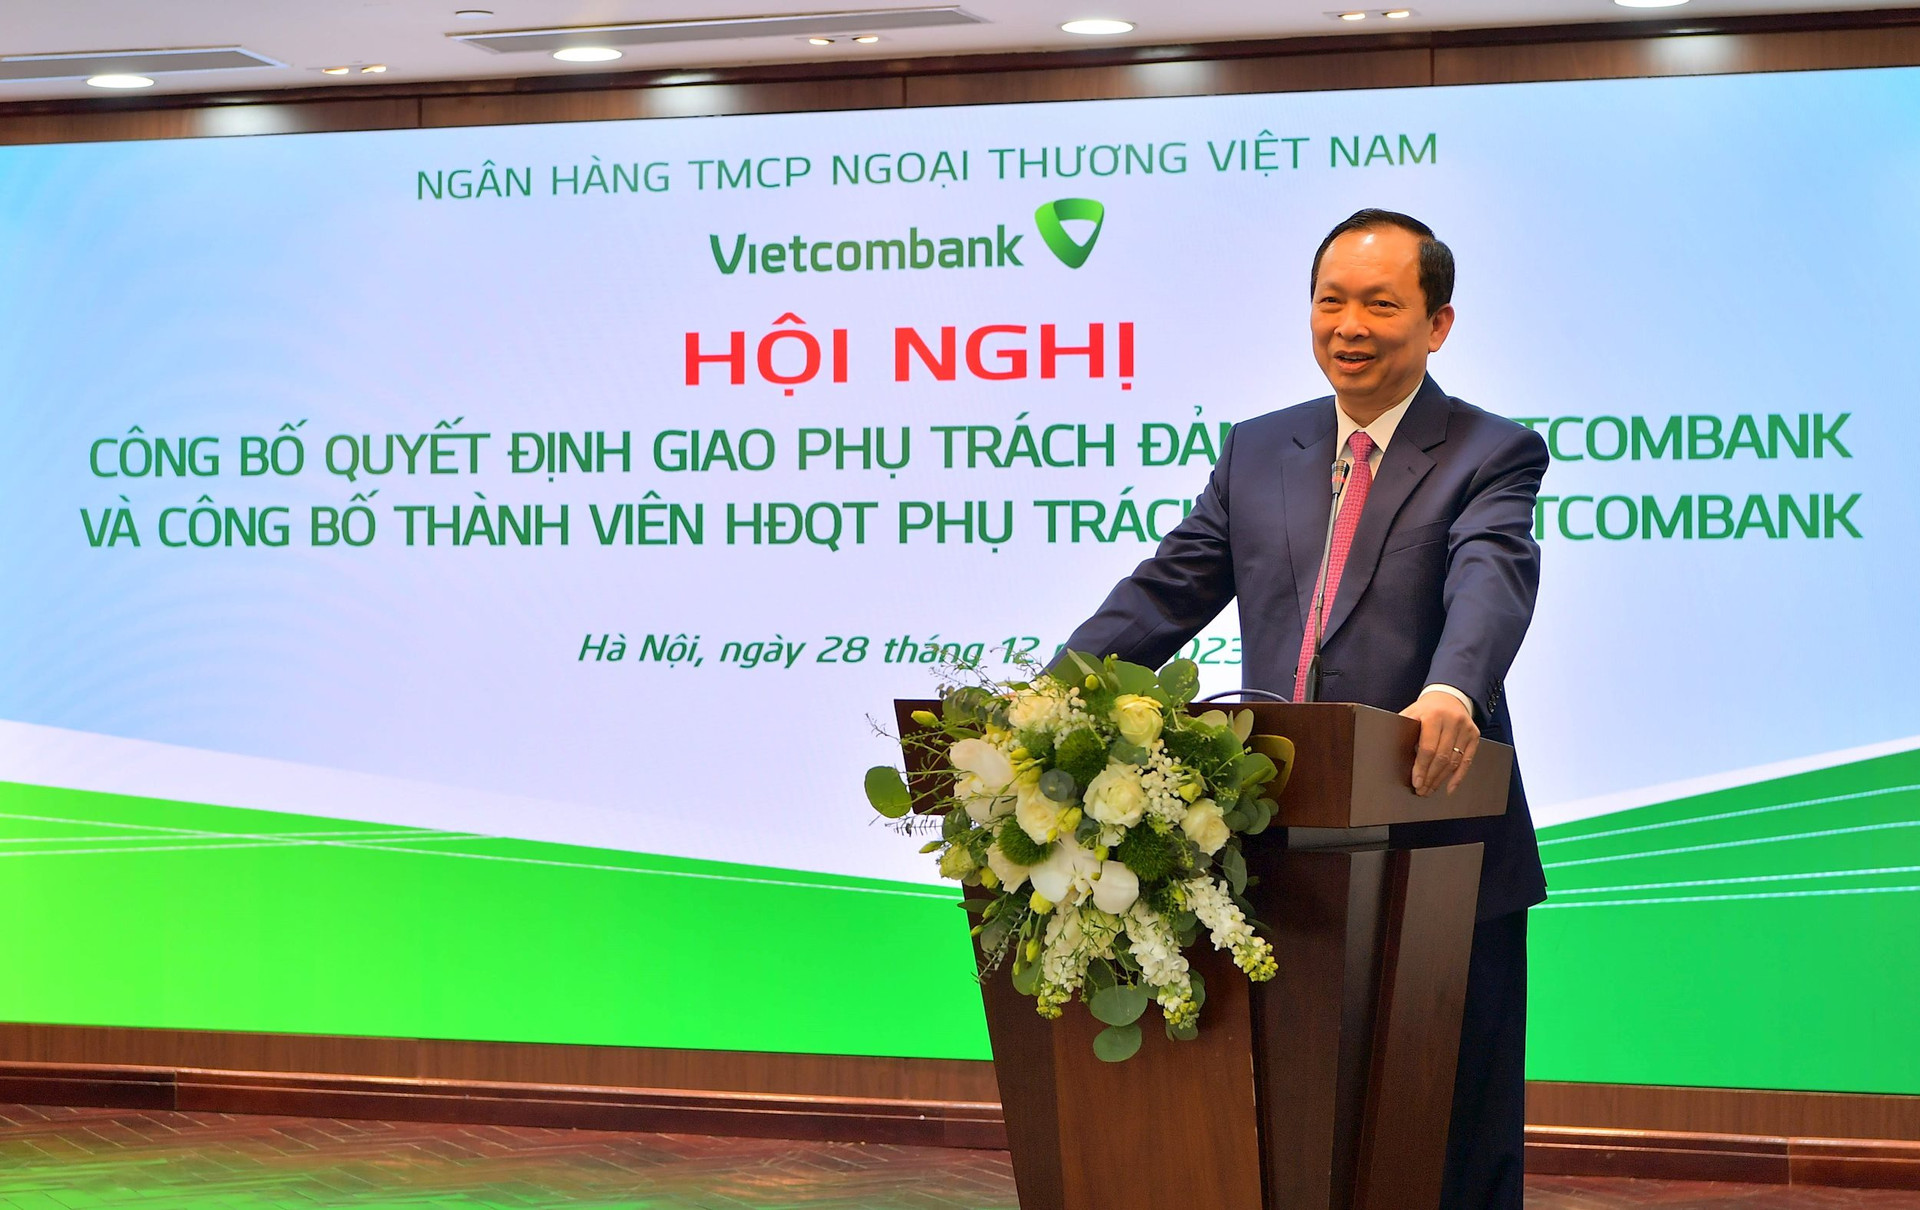 Vietcombank trao quyết định giao phụ trách Đảng bộ  - Ảnh 2.